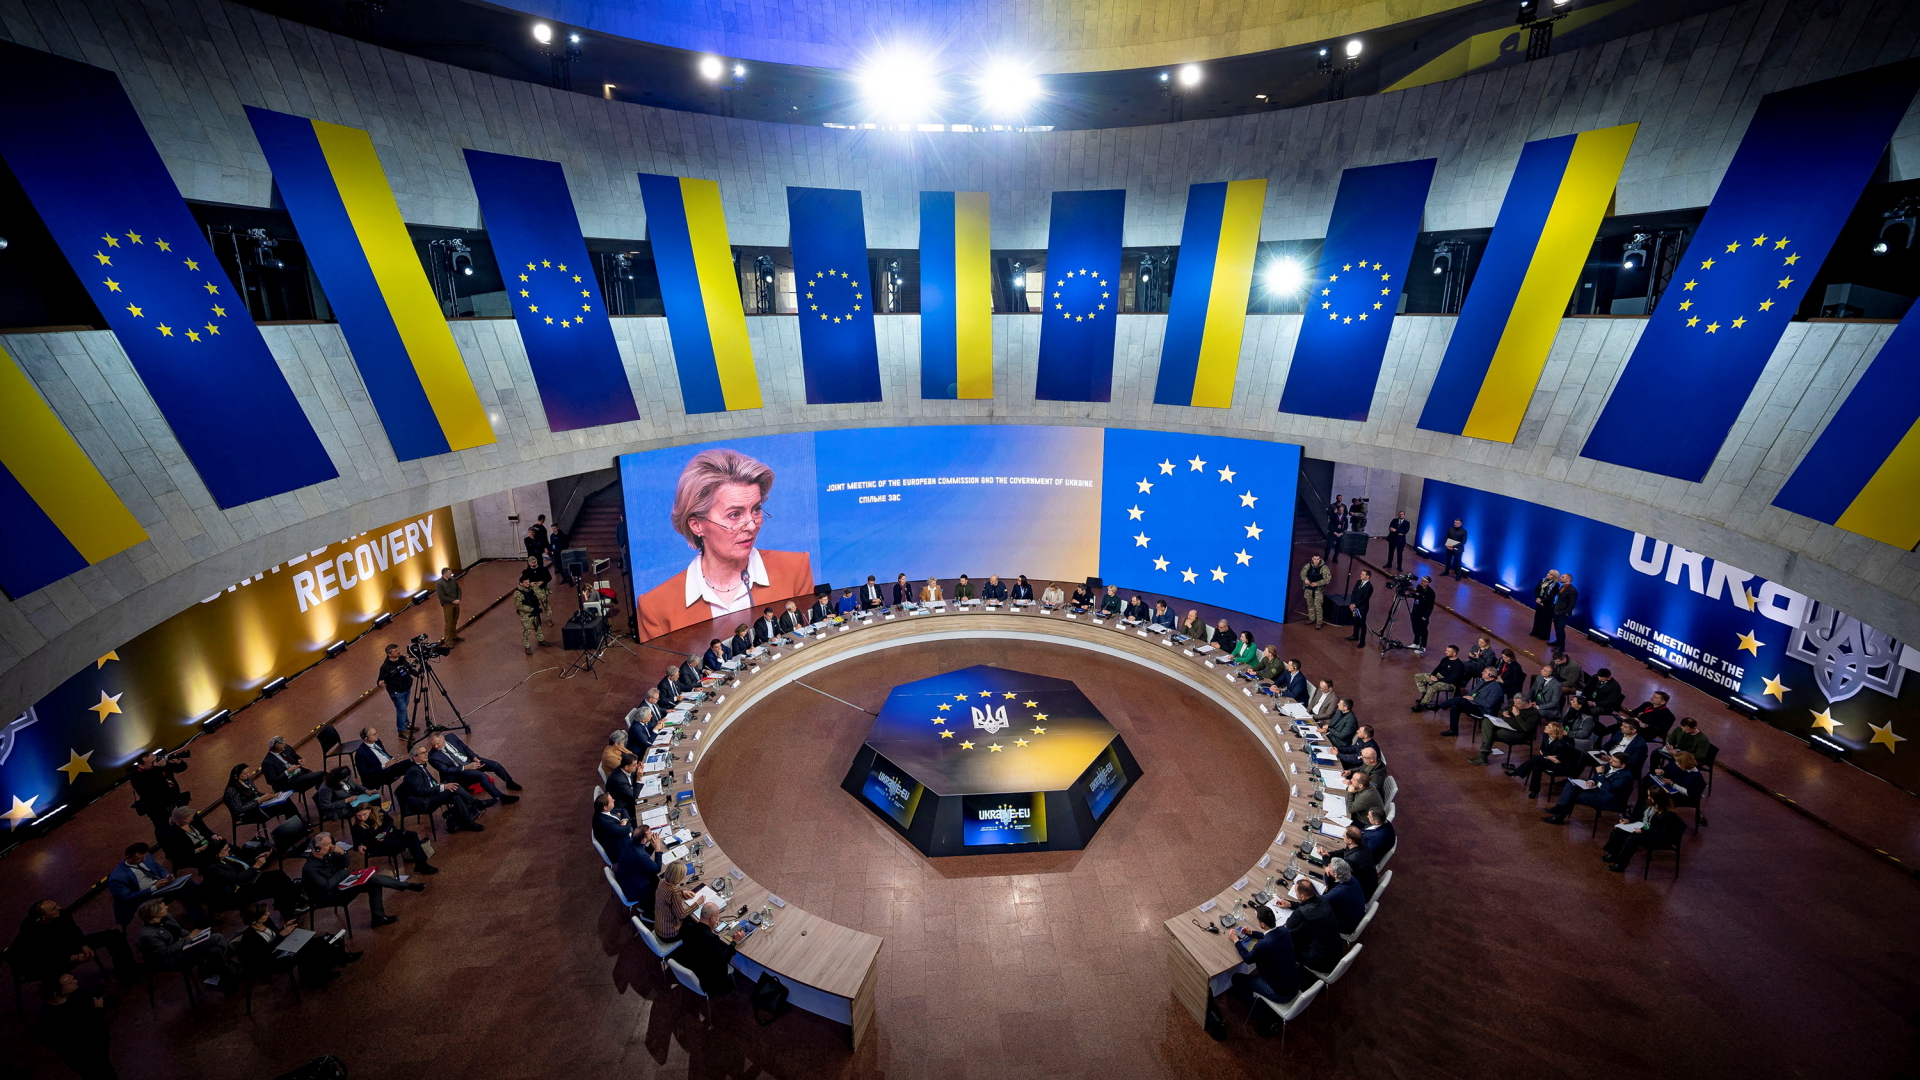 Teilnehmer des Treffens zwischen der EU-Kommission und der Ukraine in Kiew. | via REUTERS